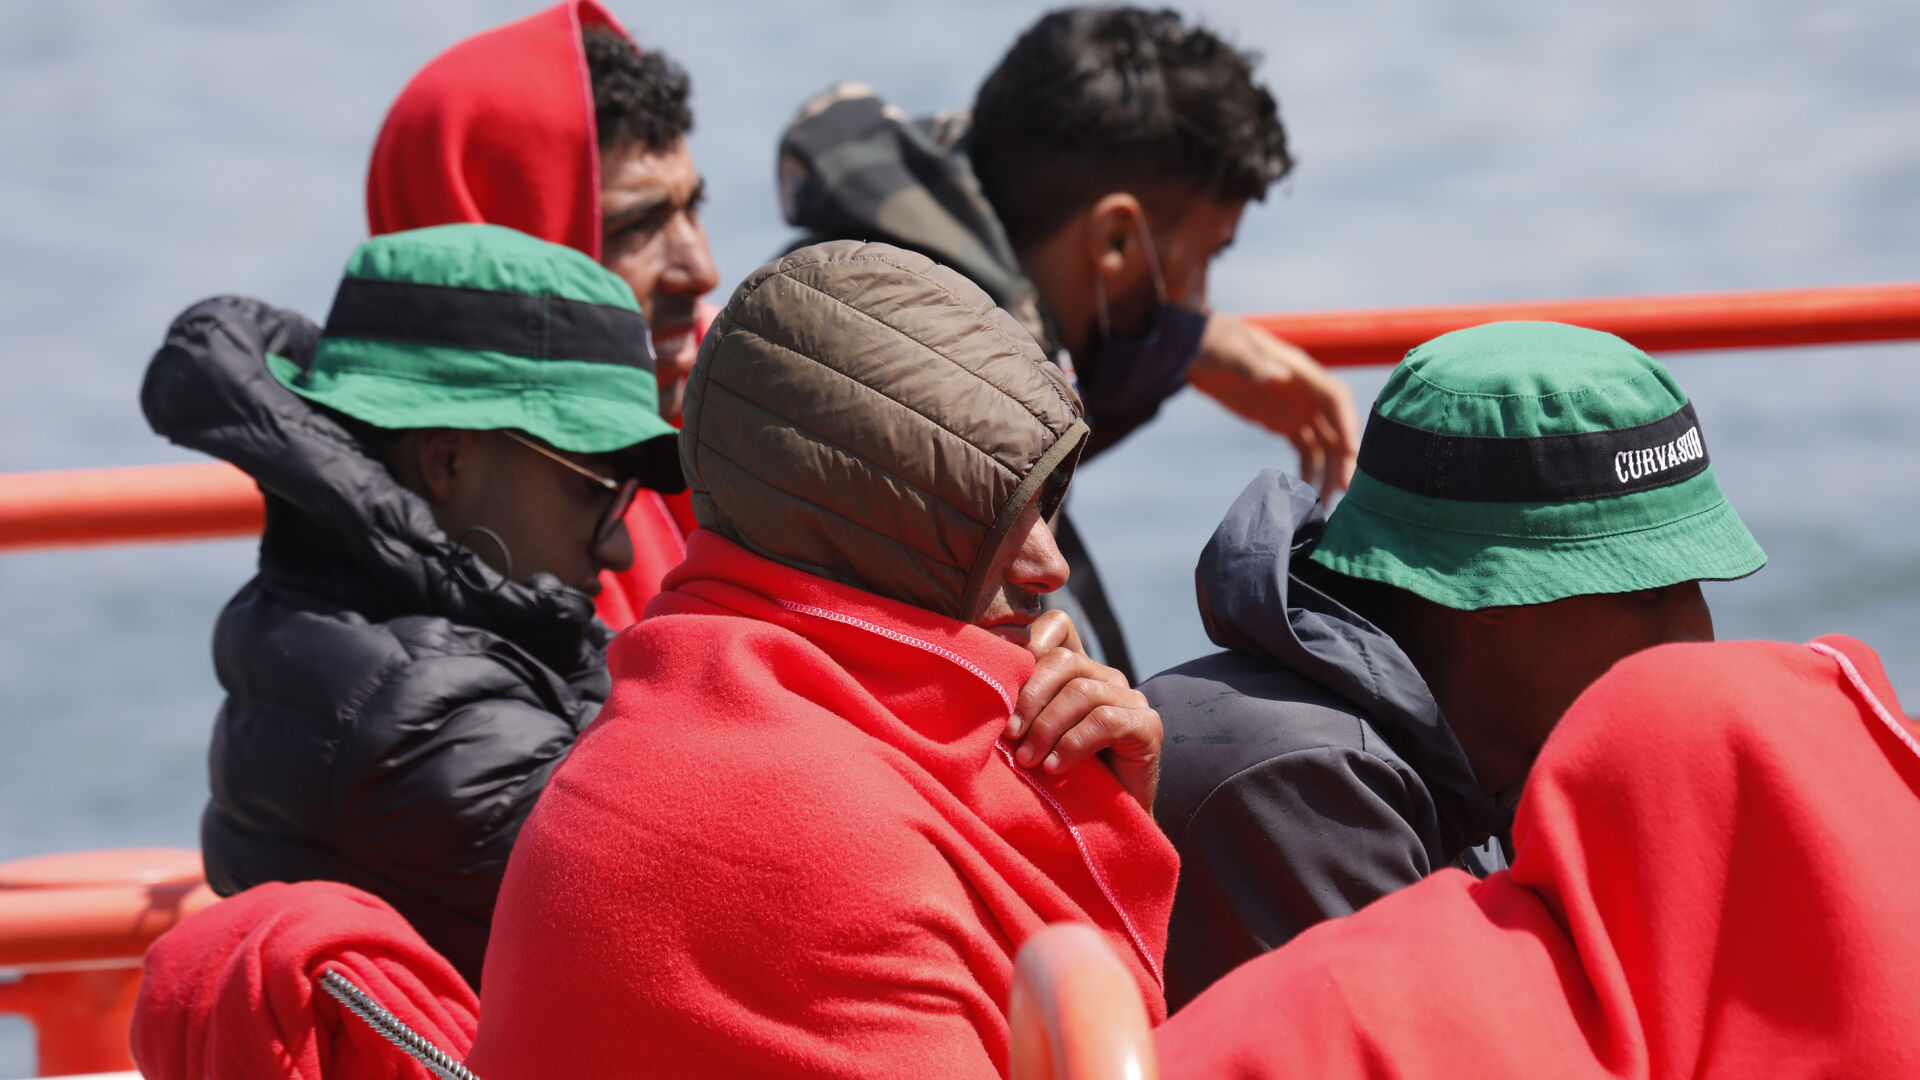 Las fotos de los 61 migrantes rescatados en aguas del estrecho